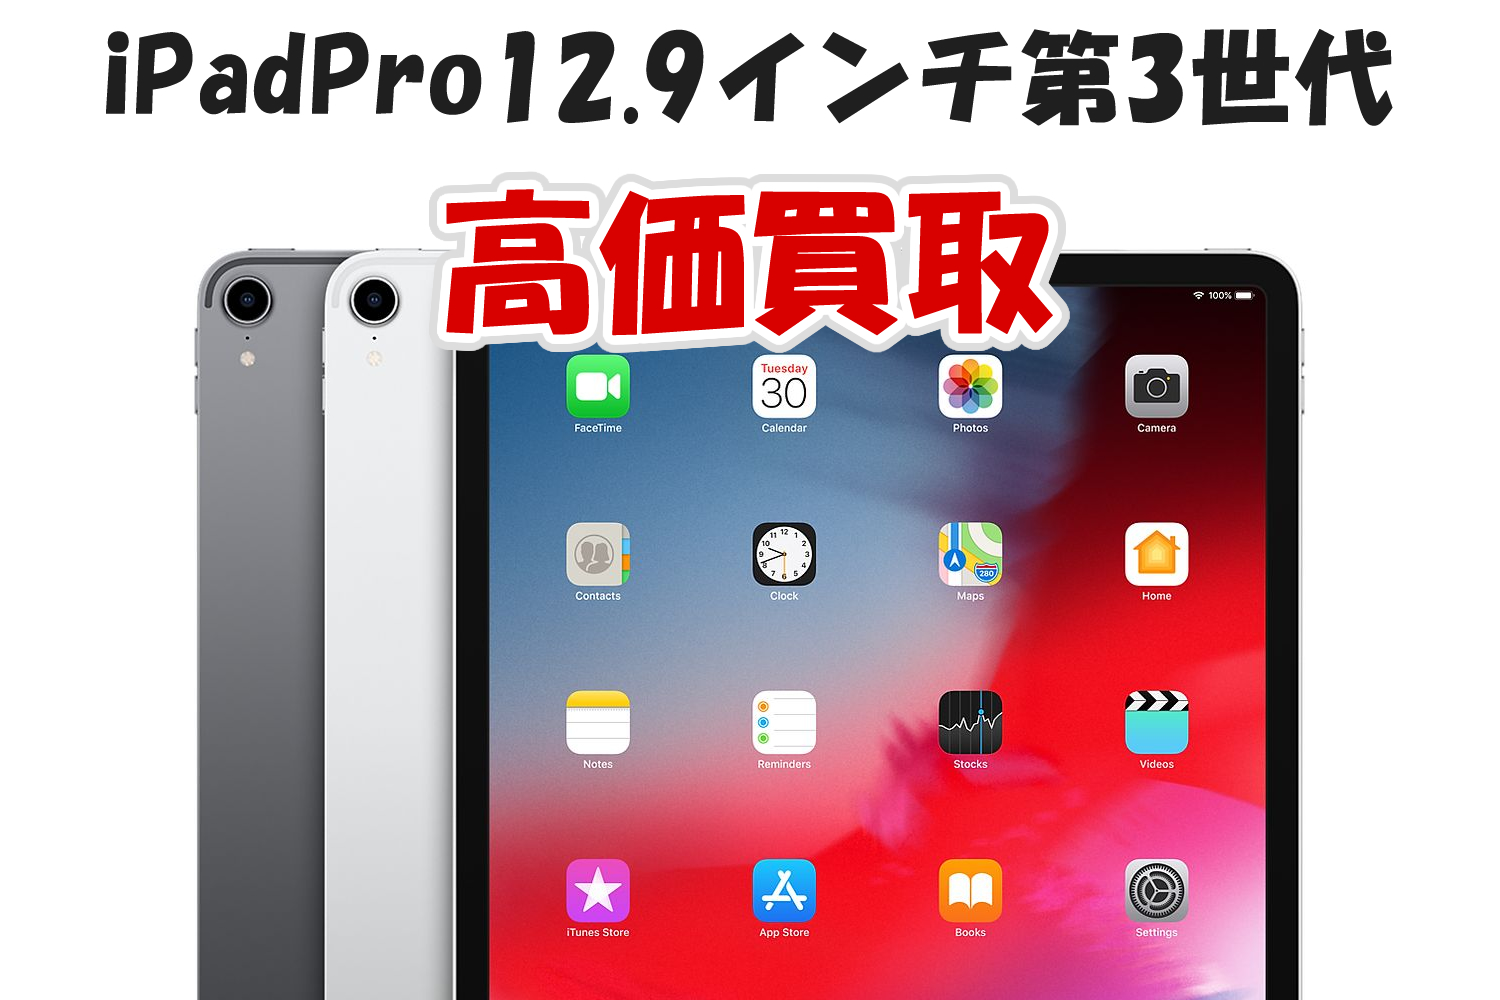 iPad Pro 12.9 第3世代 - タブレット